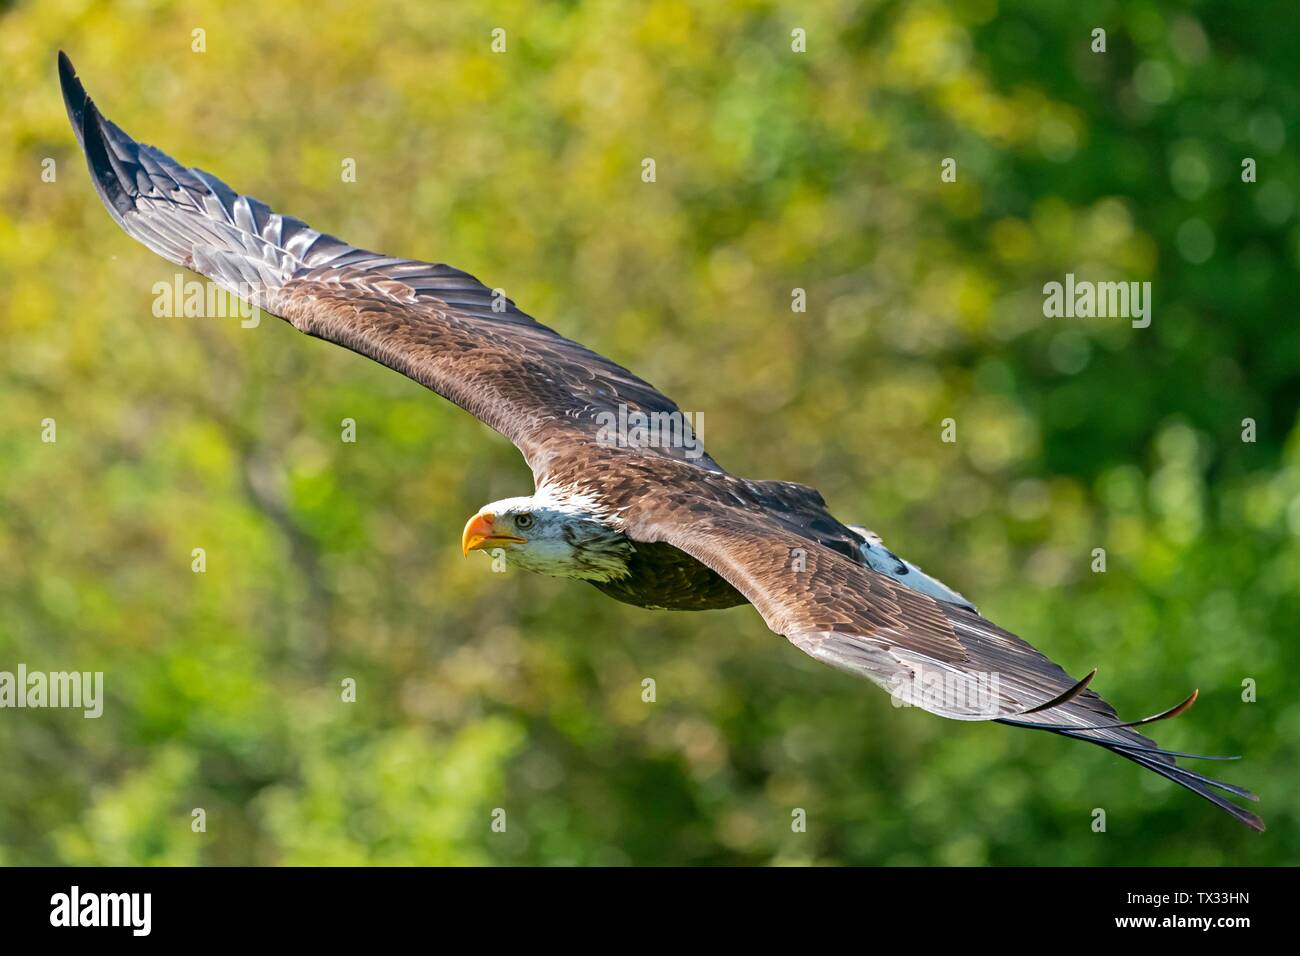 Bald eagle (Haliaeetus leucocephalus) flying, Germany Stock Photo